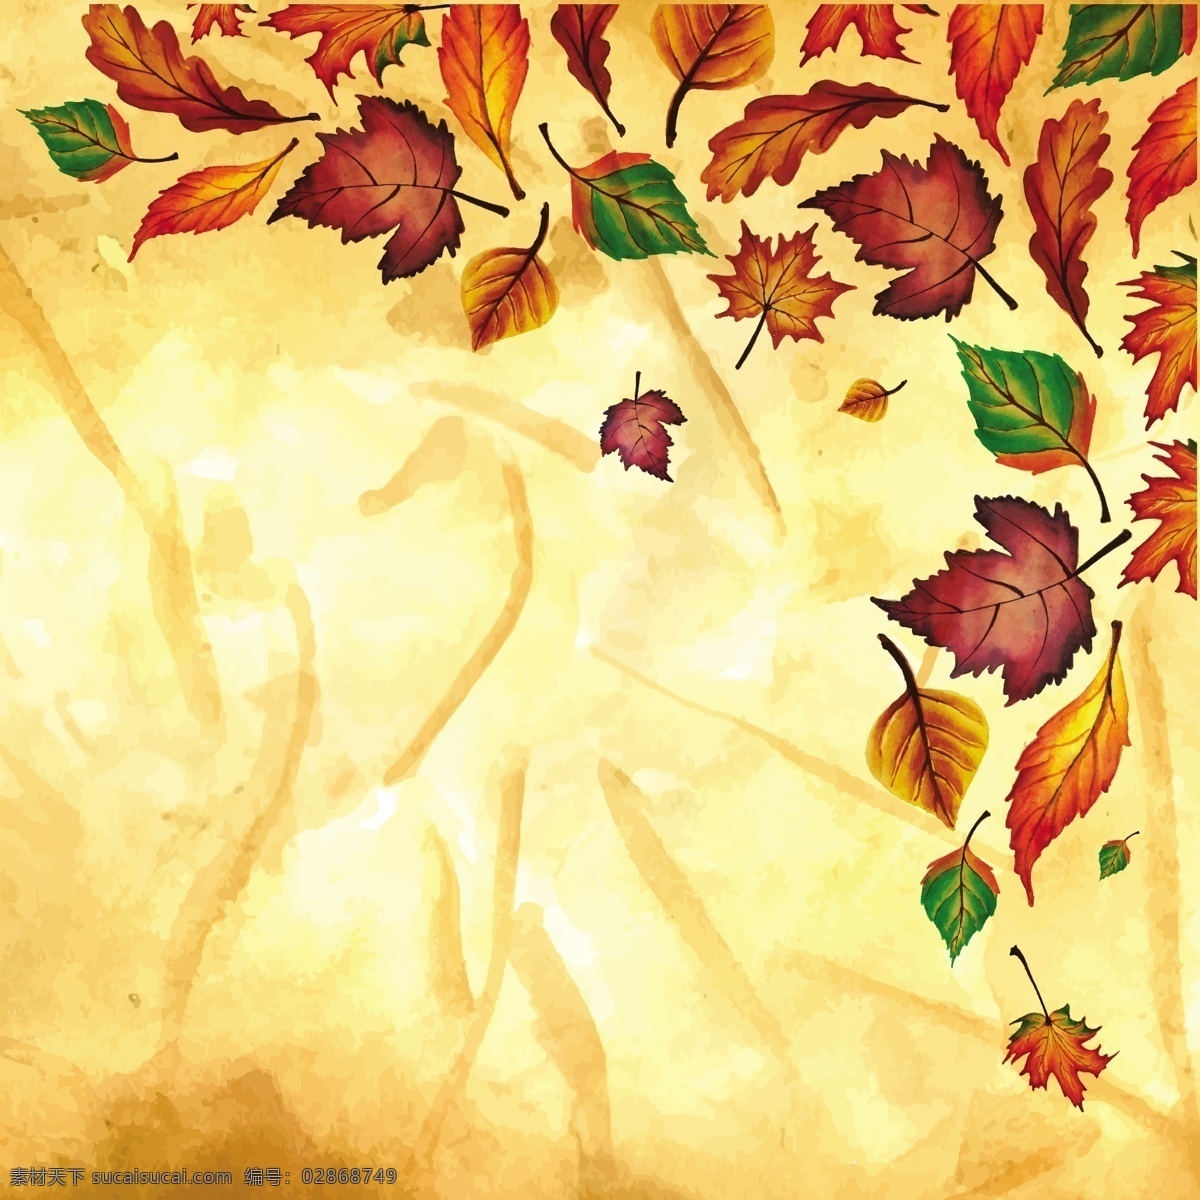 秋天 背景 水彩画 橙色 黄色 绿色 叶子 横幅 水彩 销售 花卉 树 水 手 模板 树叶 自然 购物 手绘 森林 颜色 商店